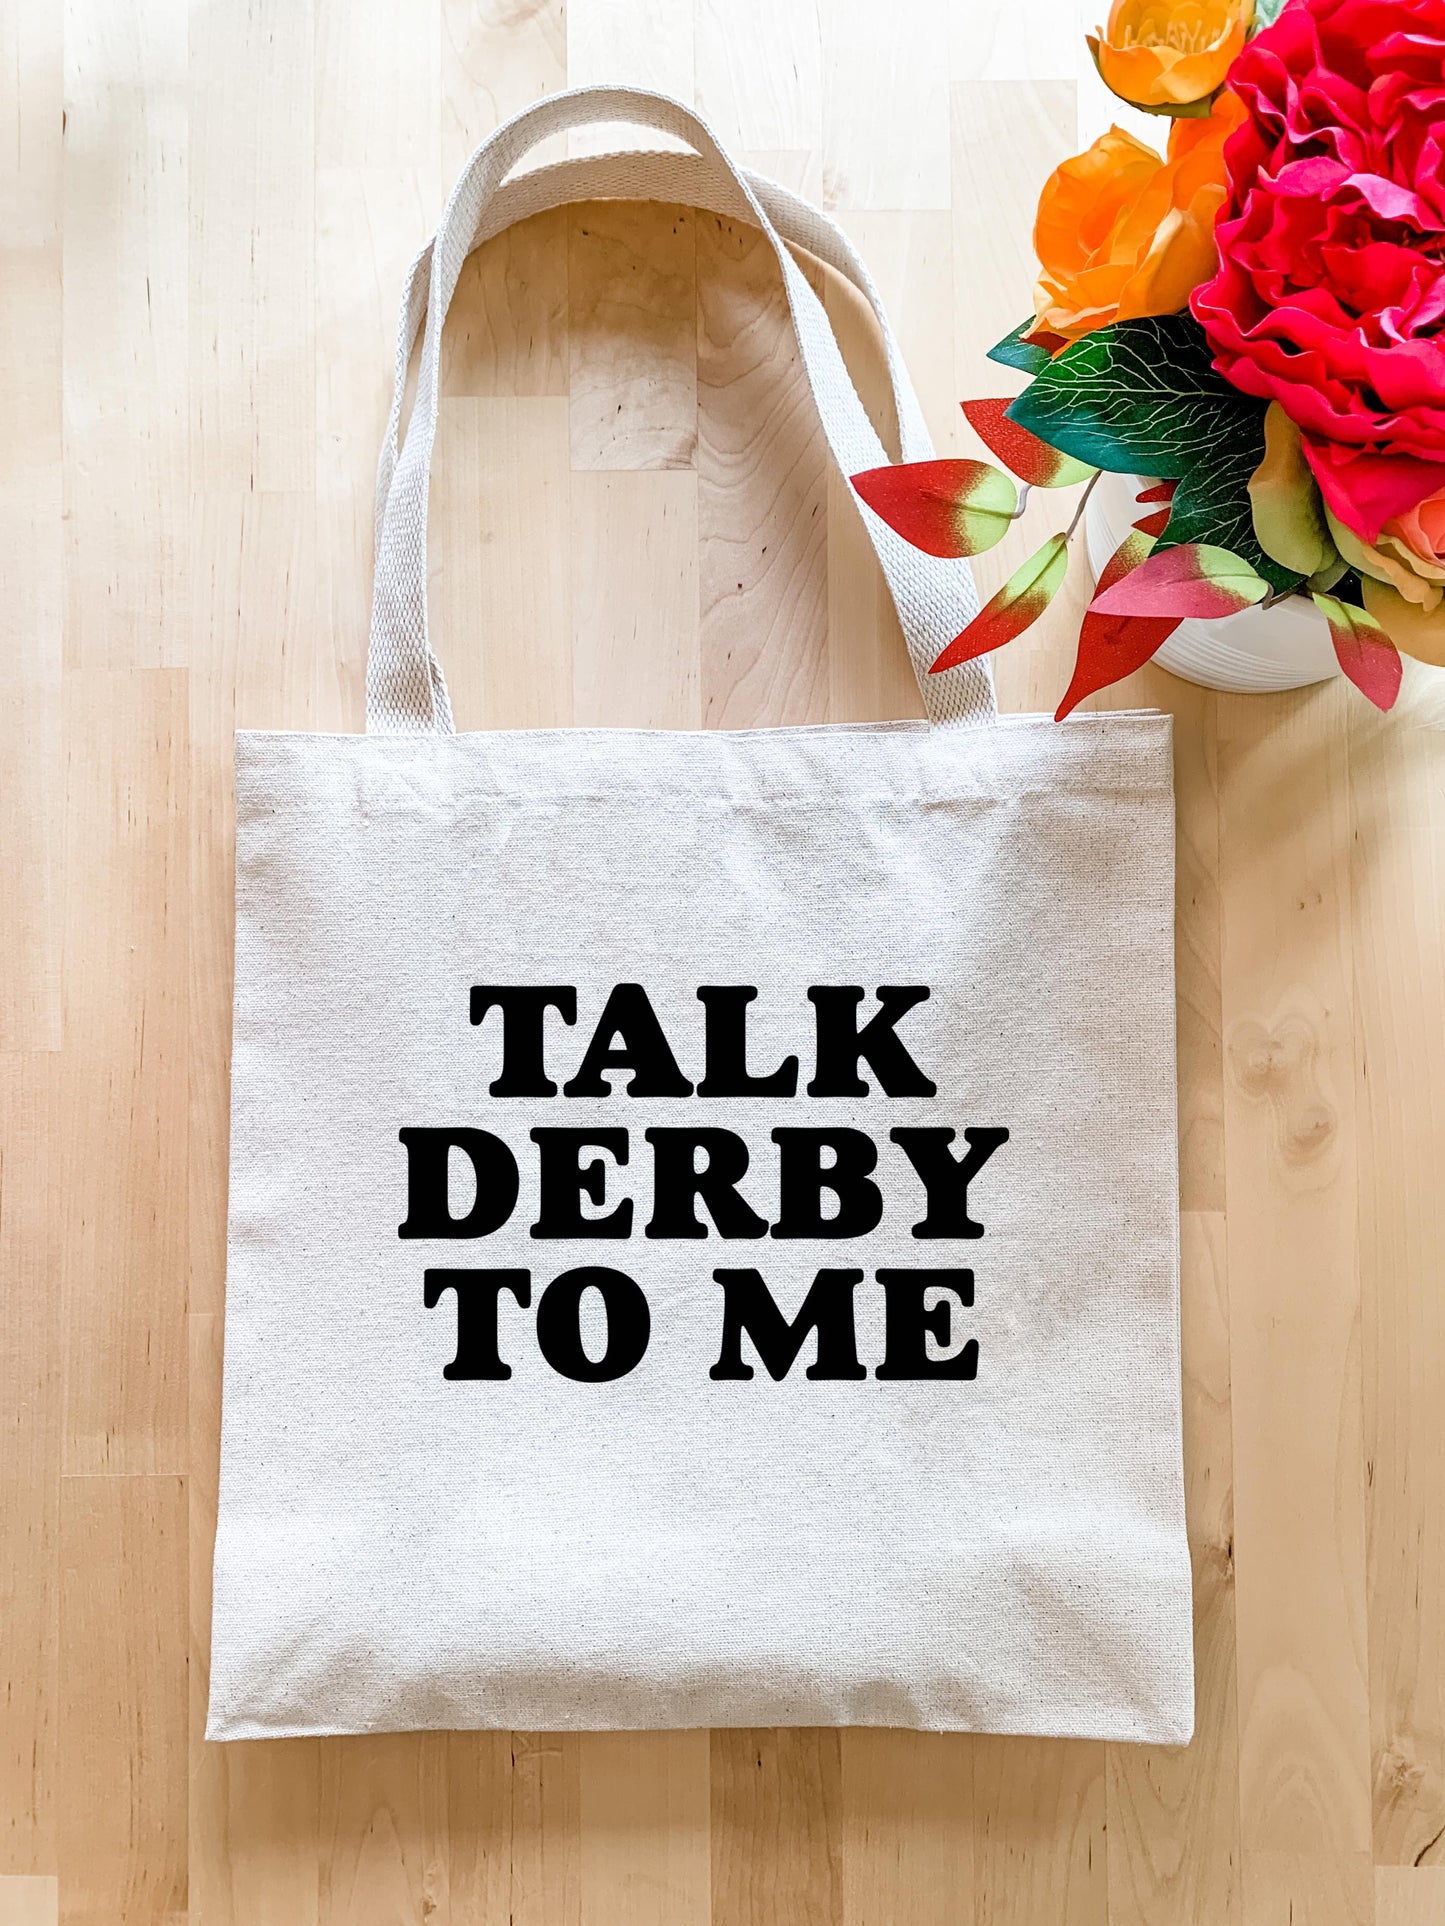 Talk Derby to Me - Tote Bag - MoonlightMakers